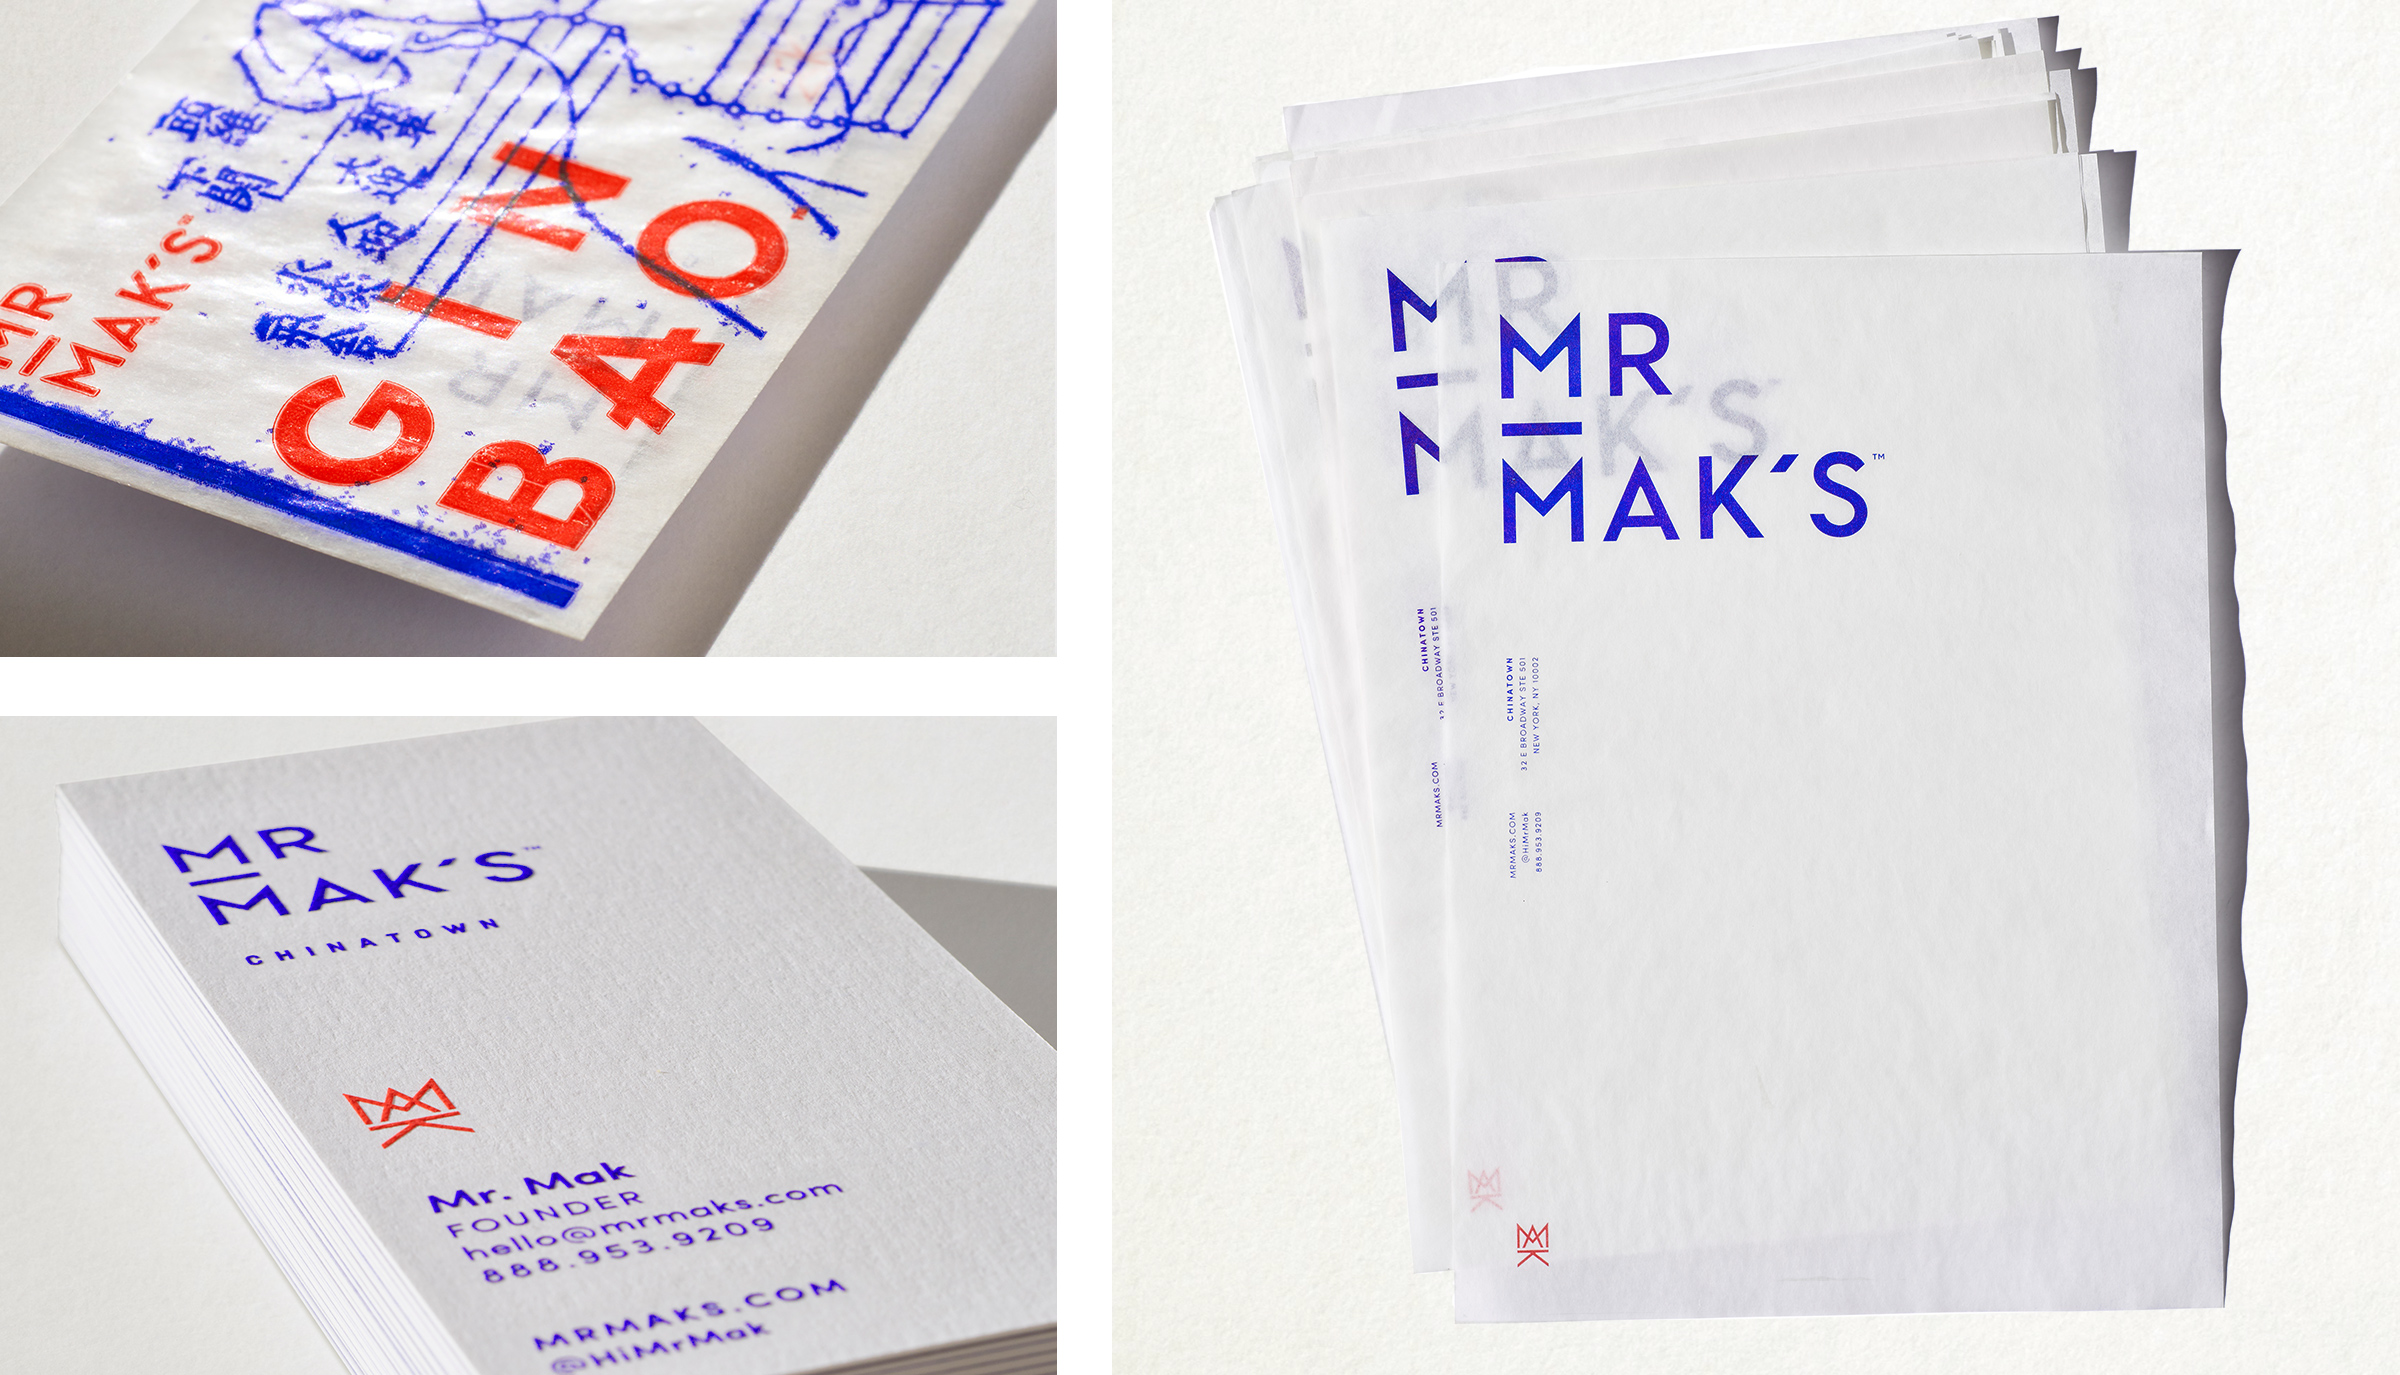 Mr. Mak's stationery design by Werner Design Werks